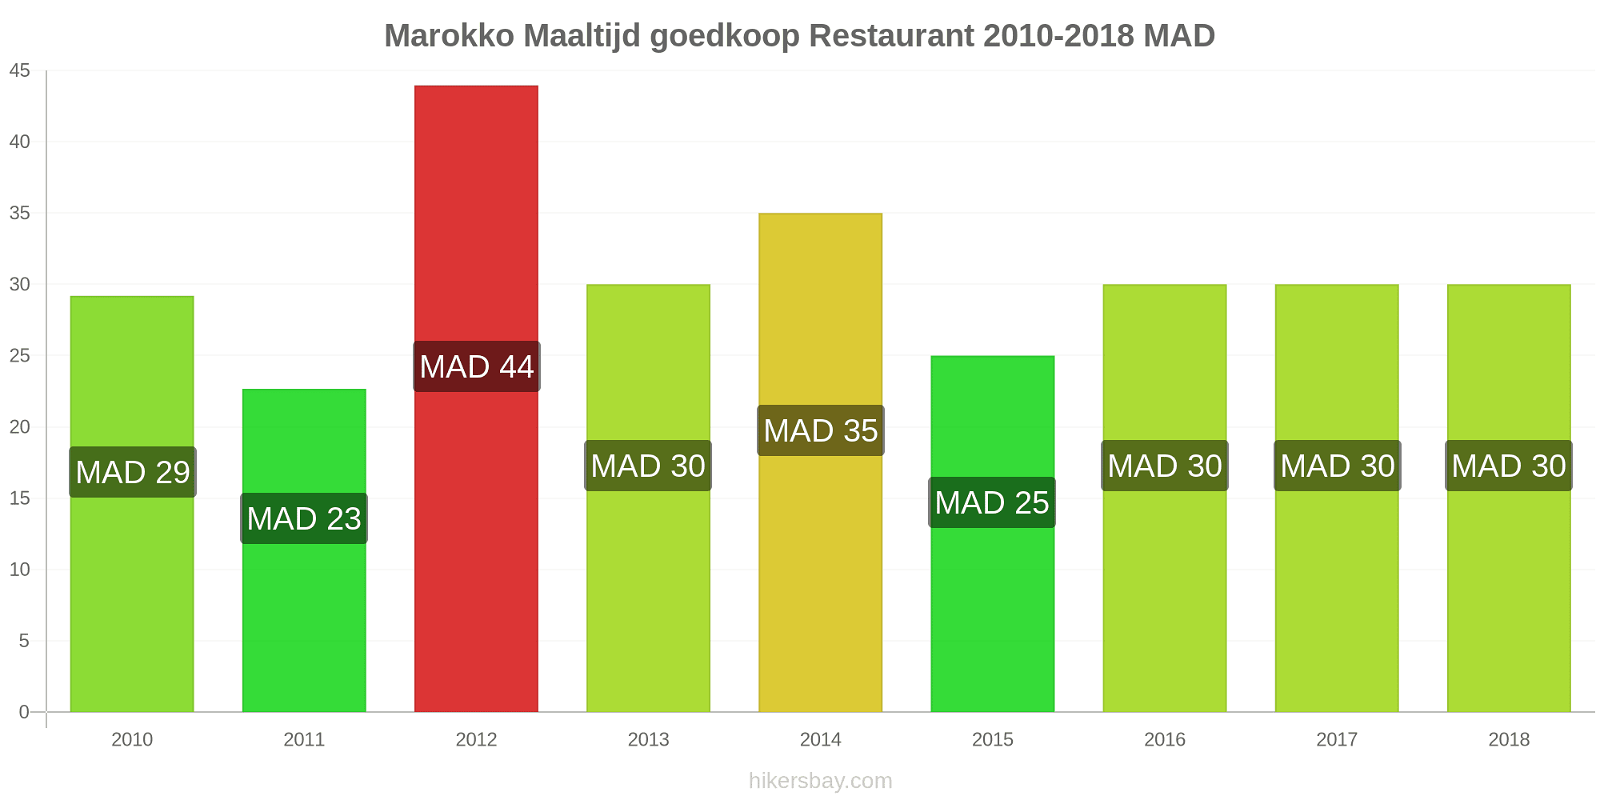 Marokko prijswijzigingen Maaltijd in een goedkoop restaurant hikersbay.com